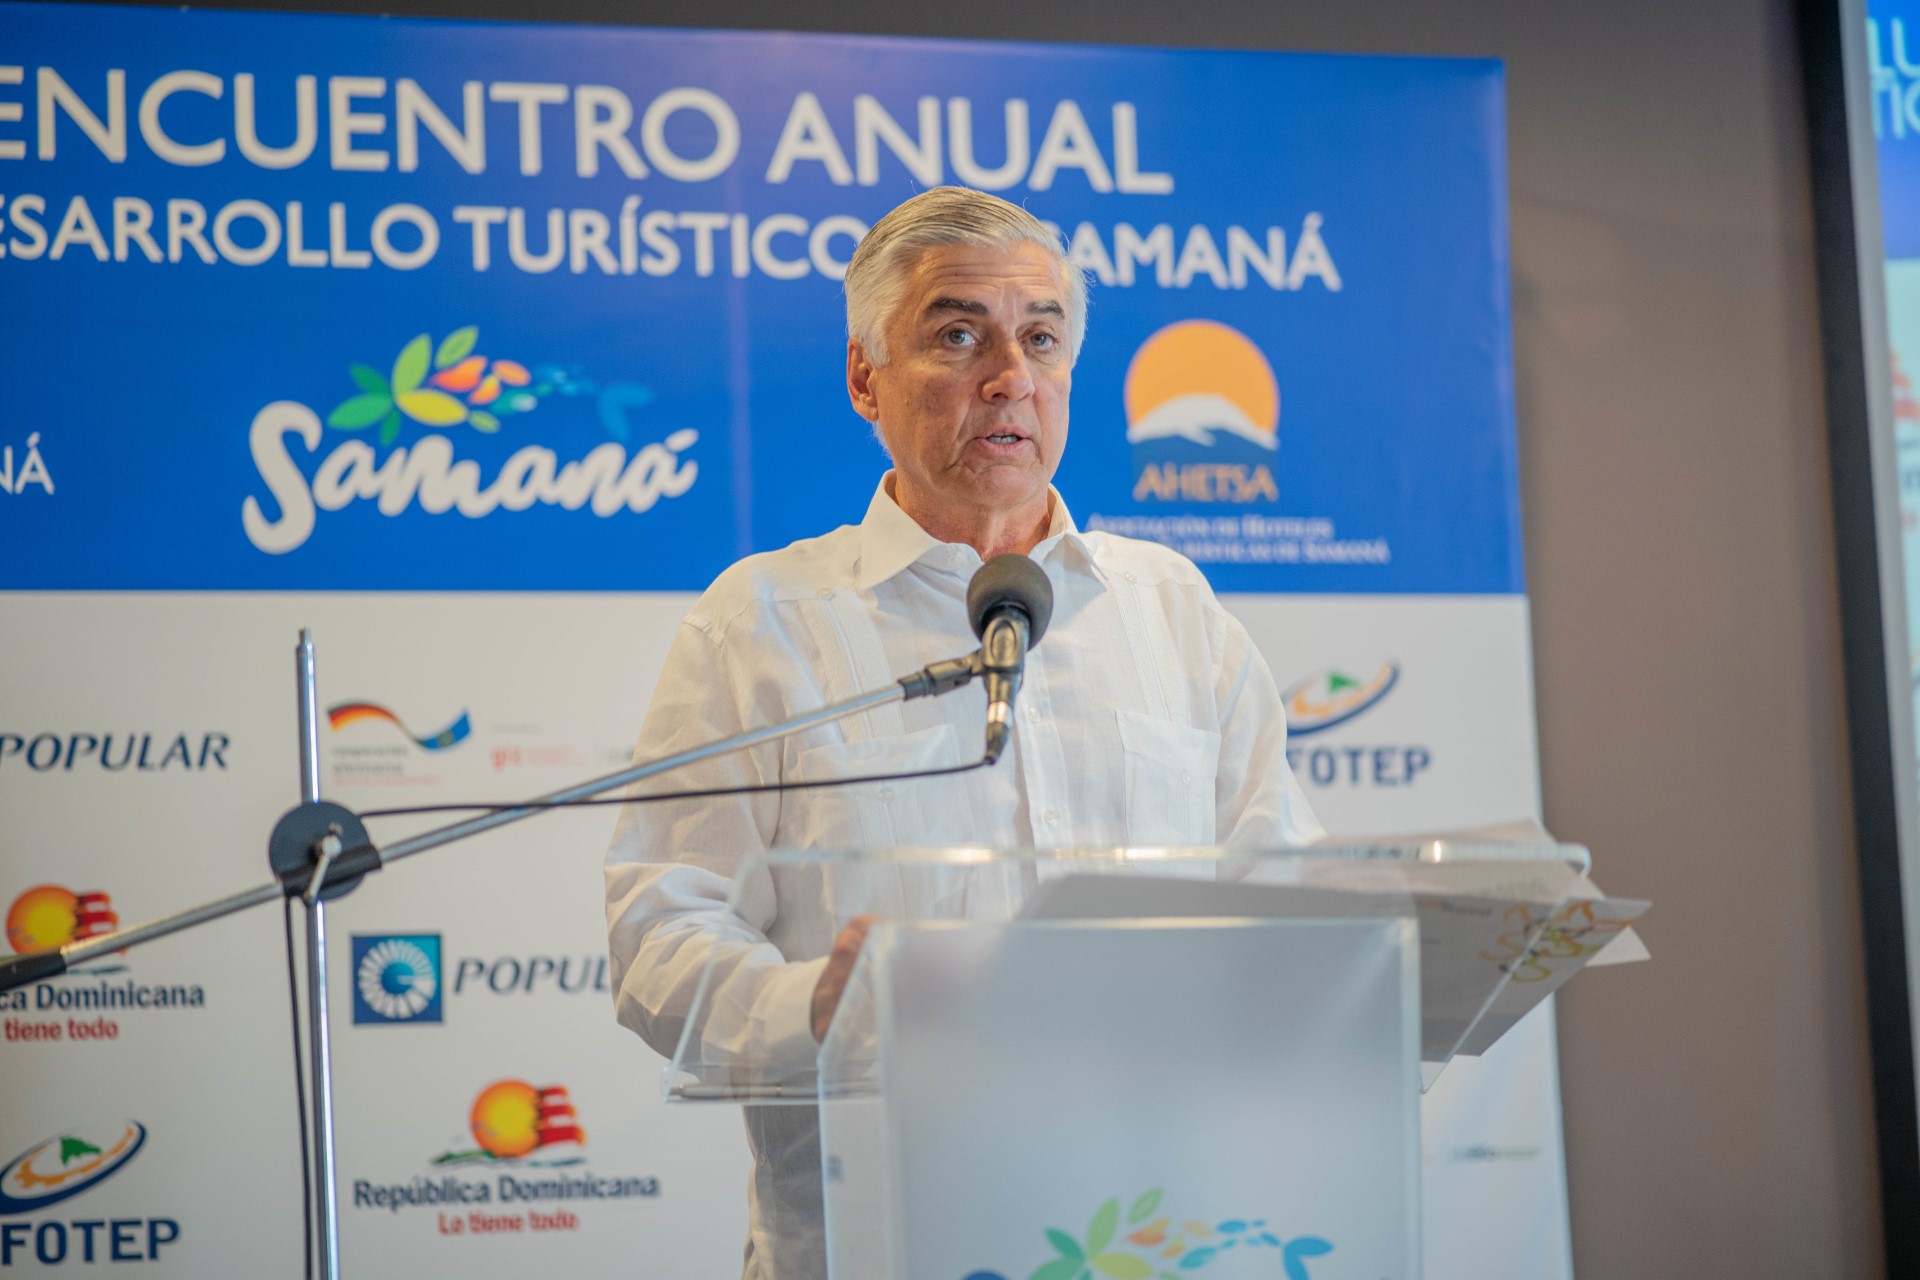 Anuncian IX Encuentro Anual para el desarrollo turístico de Samaná: “Samaná, educación y competitividad en un destino”